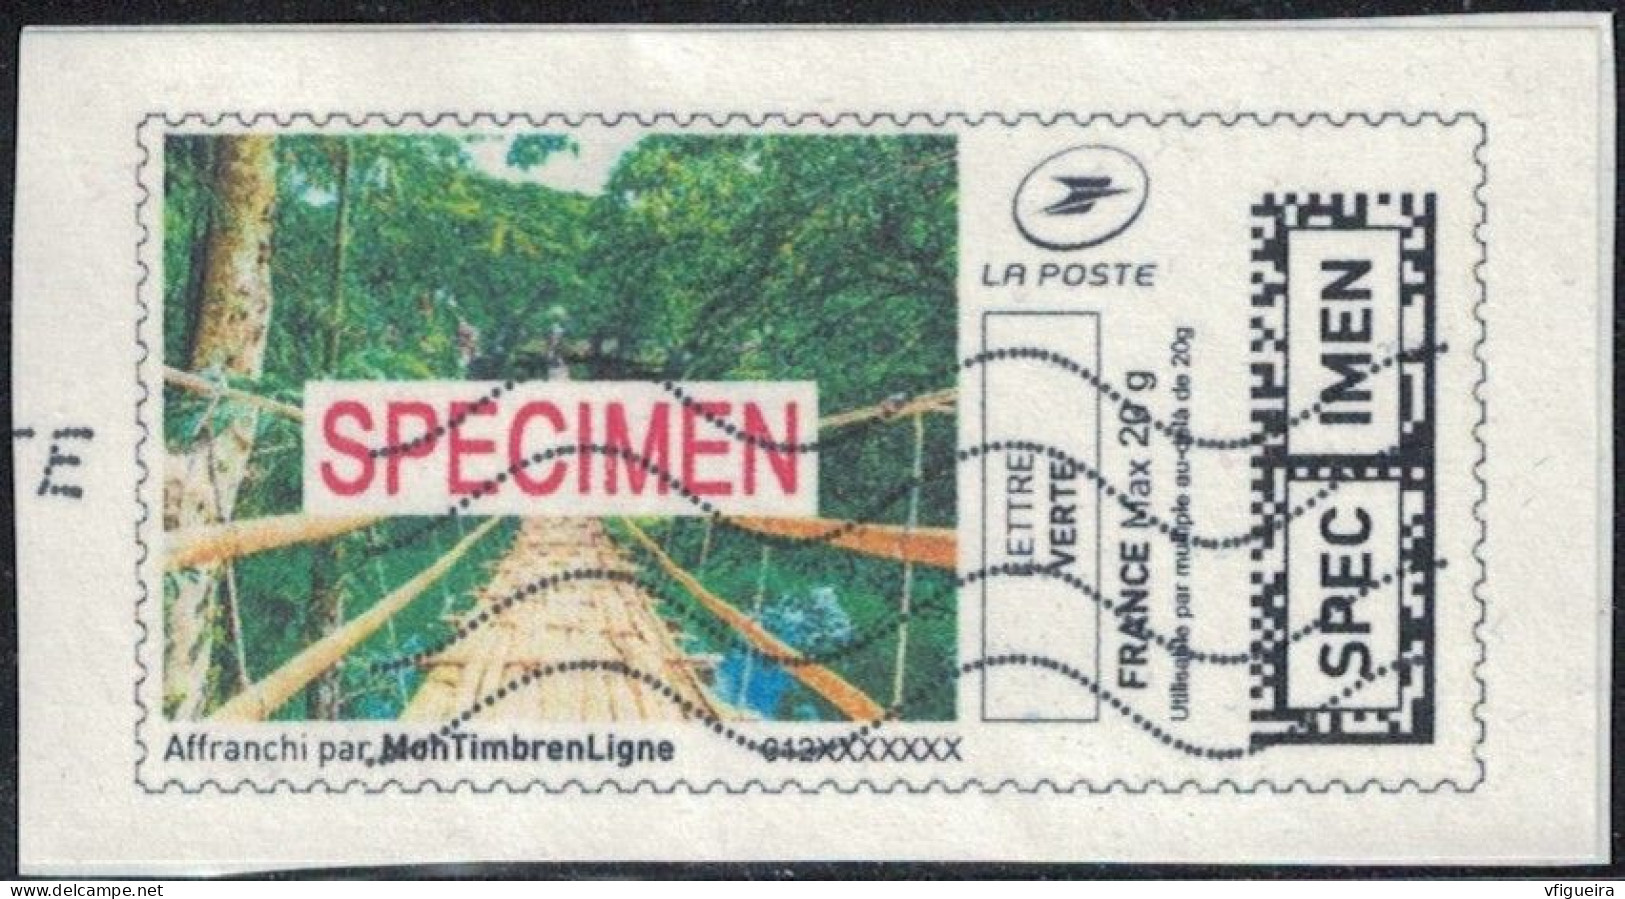 France Vignette Sur Fragment Used Mon Timbre En Ligne Spécimen Affranchie SU - Sellos Imprimibles (Montimbrenligne)